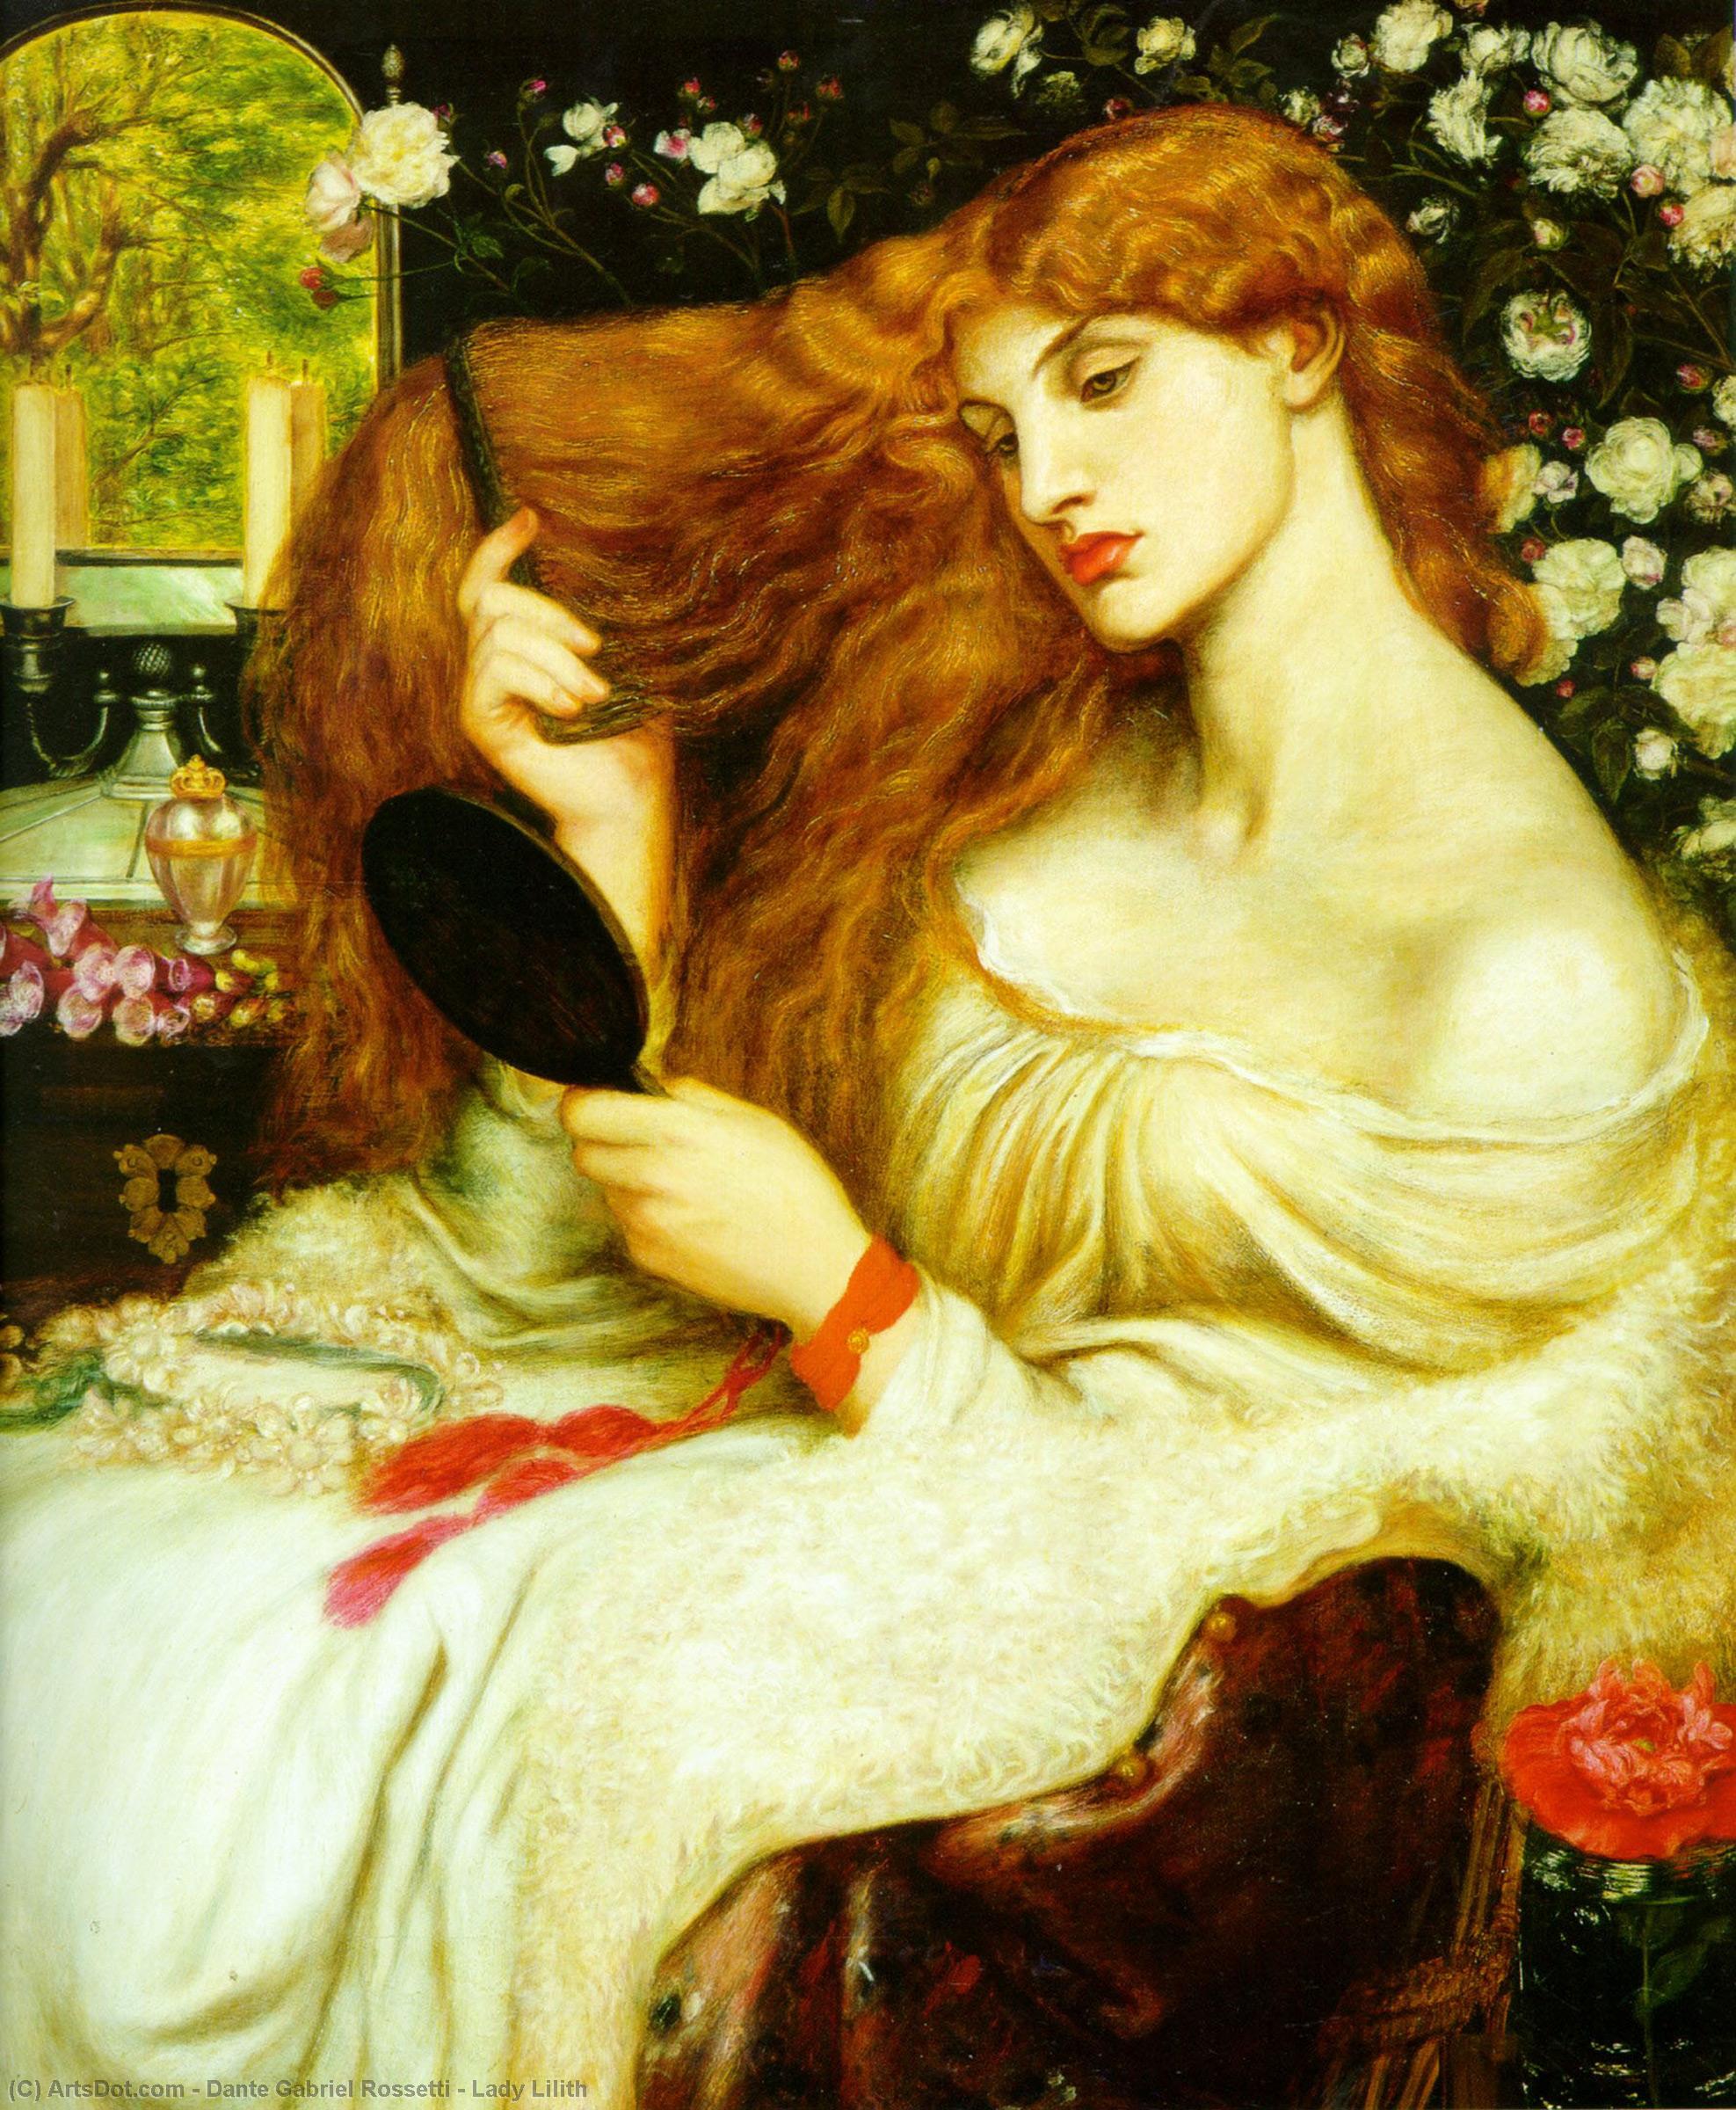 WikiOO.org - אנציקלופדיה לאמנויות יפות - ציור, יצירות אמנות Dante Gabriel Rossetti - Lady Lilith